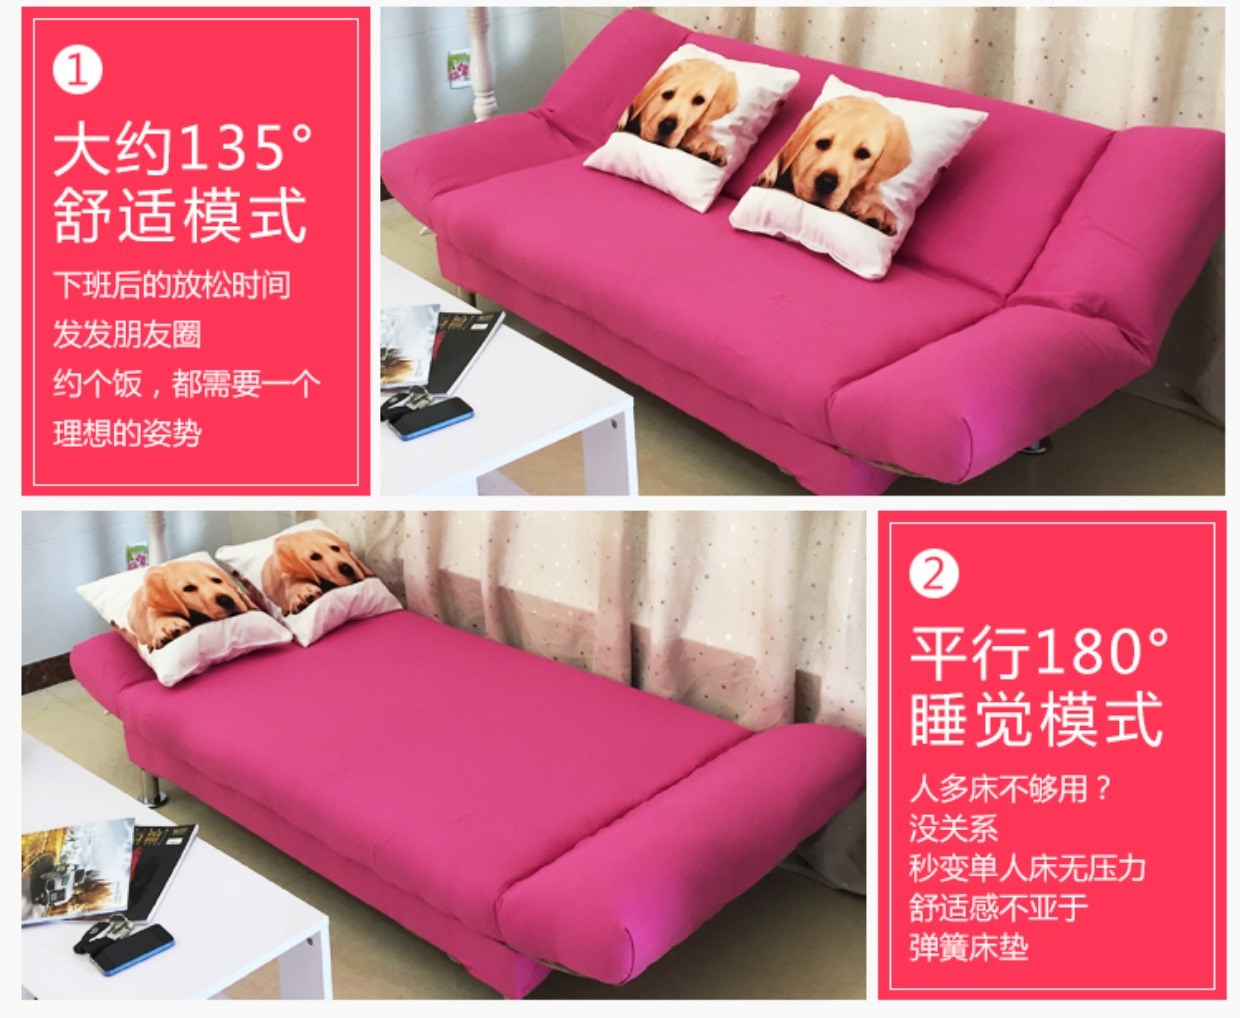 Giường sofa kết hợp, căn hộ nhỏ mini, chỗ nghỉ ngơi cho trẻ em, trải chiếu tatami, ban công đôi đơn giản, dễ gấp - Ghế sô pha